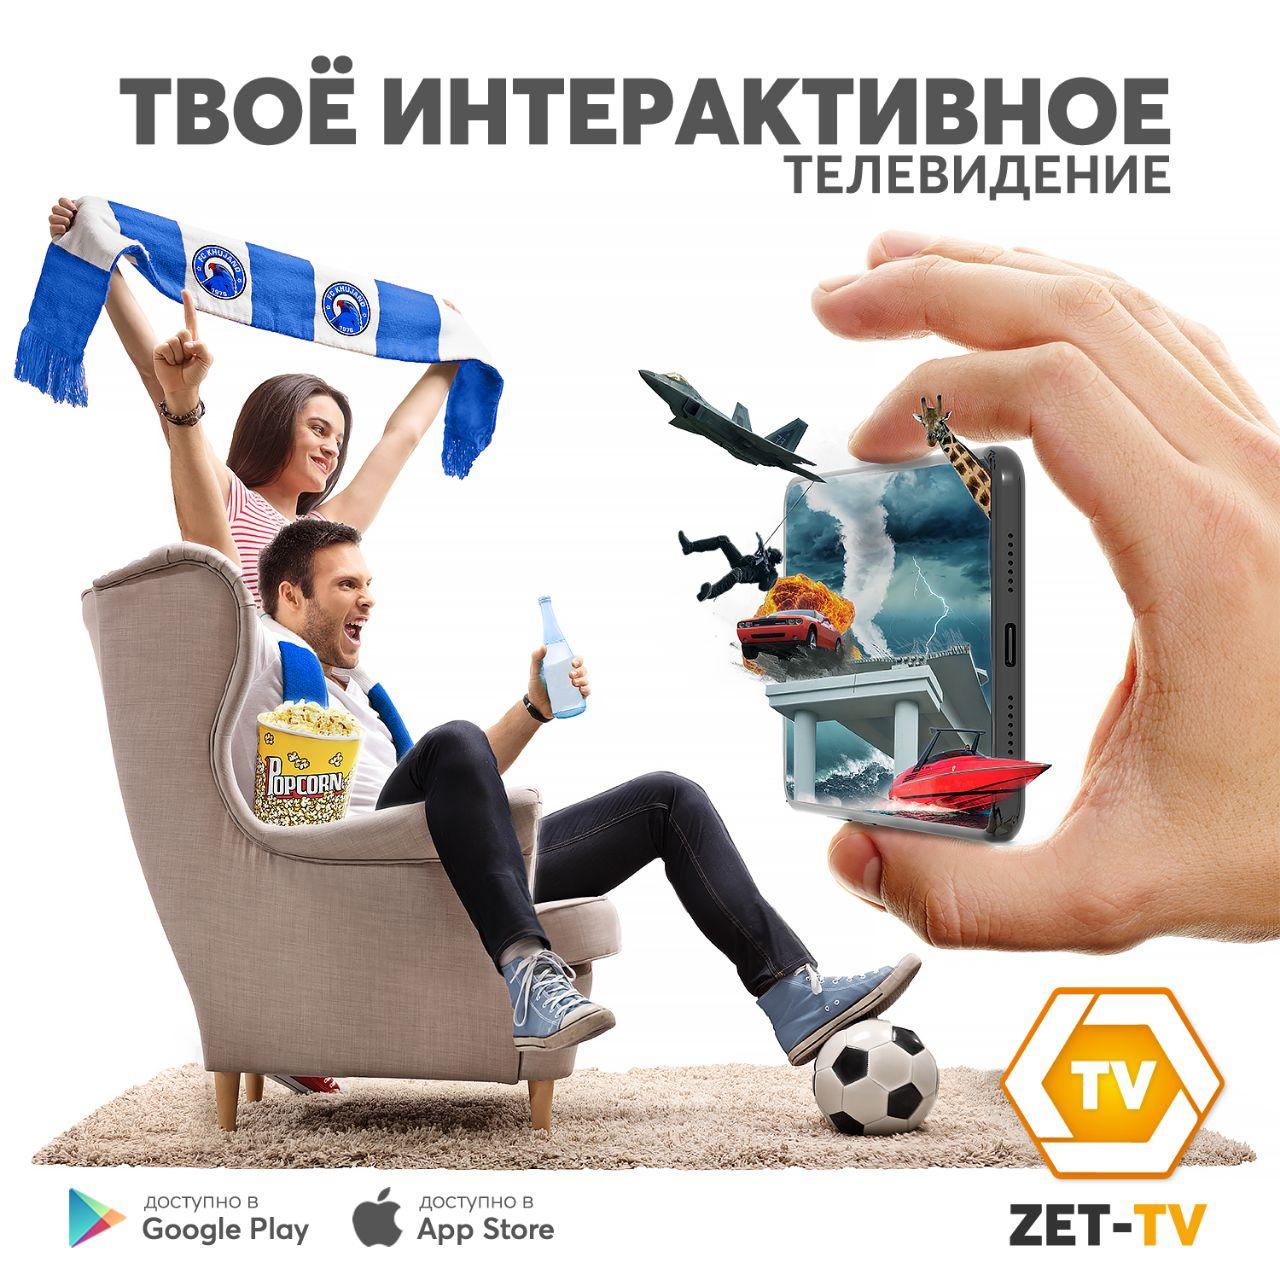 ZET-TV– смотри что хочешь и где хочешь!